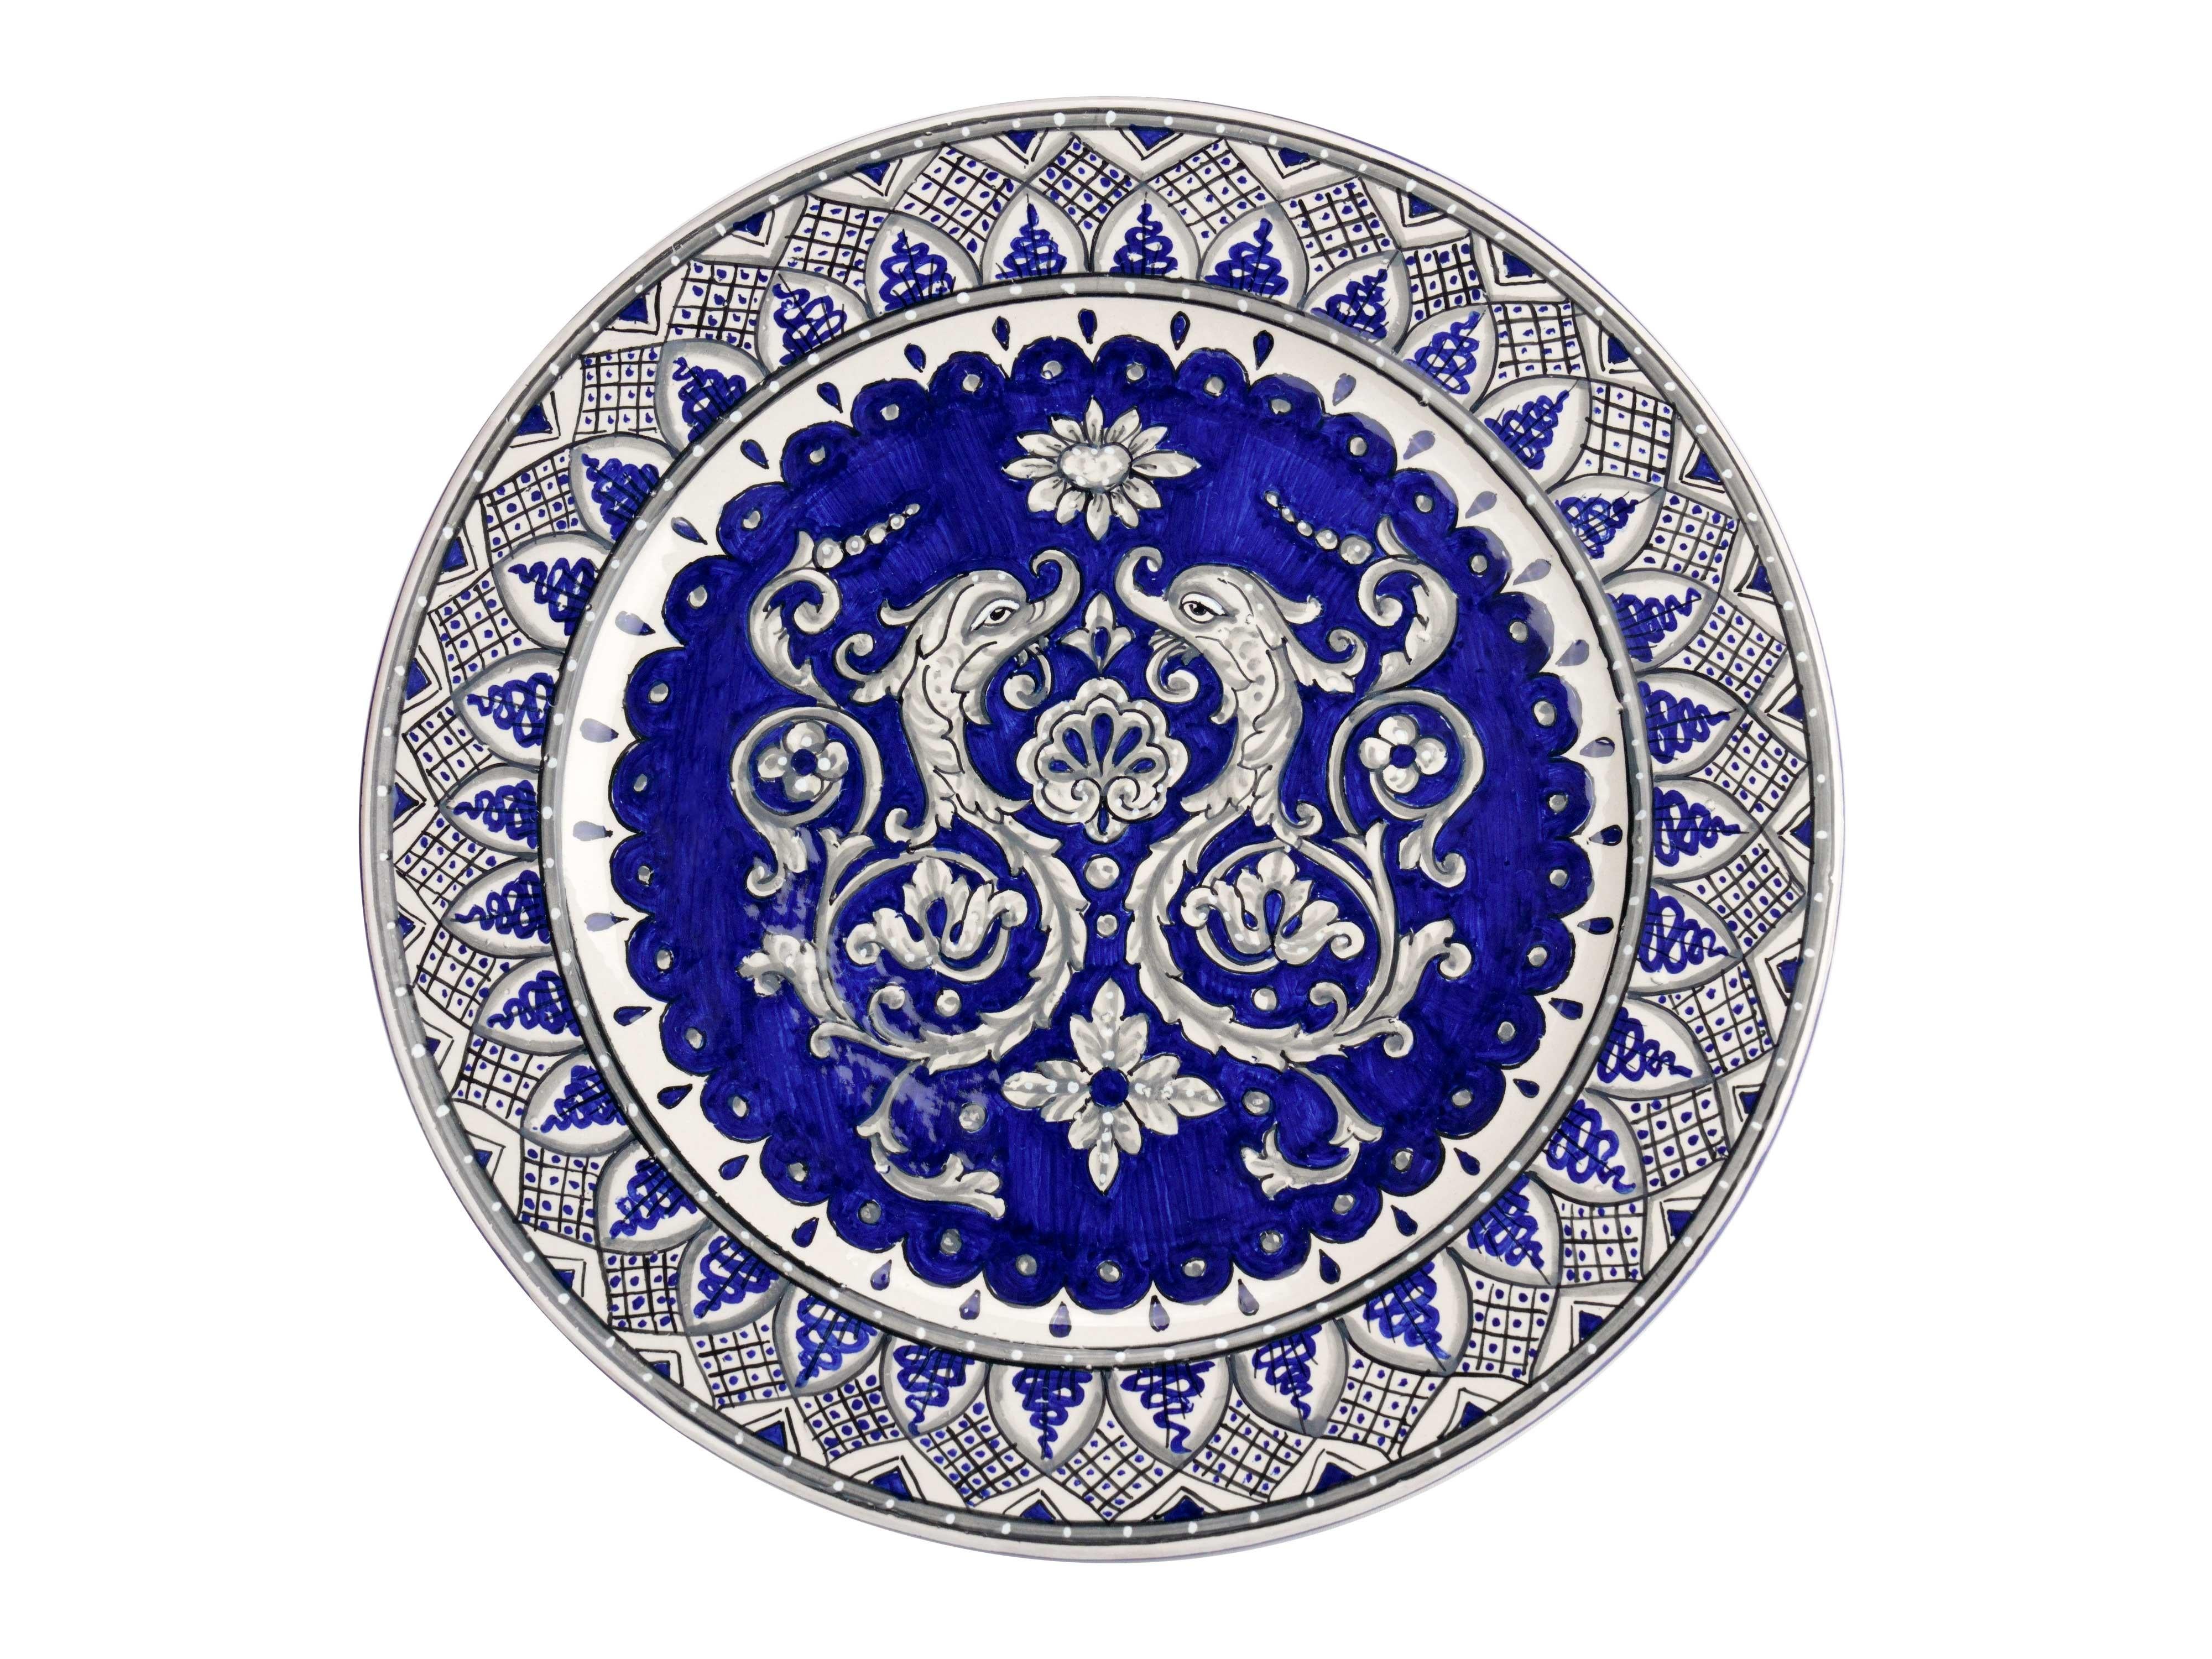 Exklusive Keramik-Set für die Dekoration der Tabelle in blau und weiß, bestehend aus einer Schale Mittelstück mit schlangenförmigen Griffen und vier Tischsets mit der Technik der Majolika gemalt. Der Mittelteil der Tasse hat eine maximale Breite von